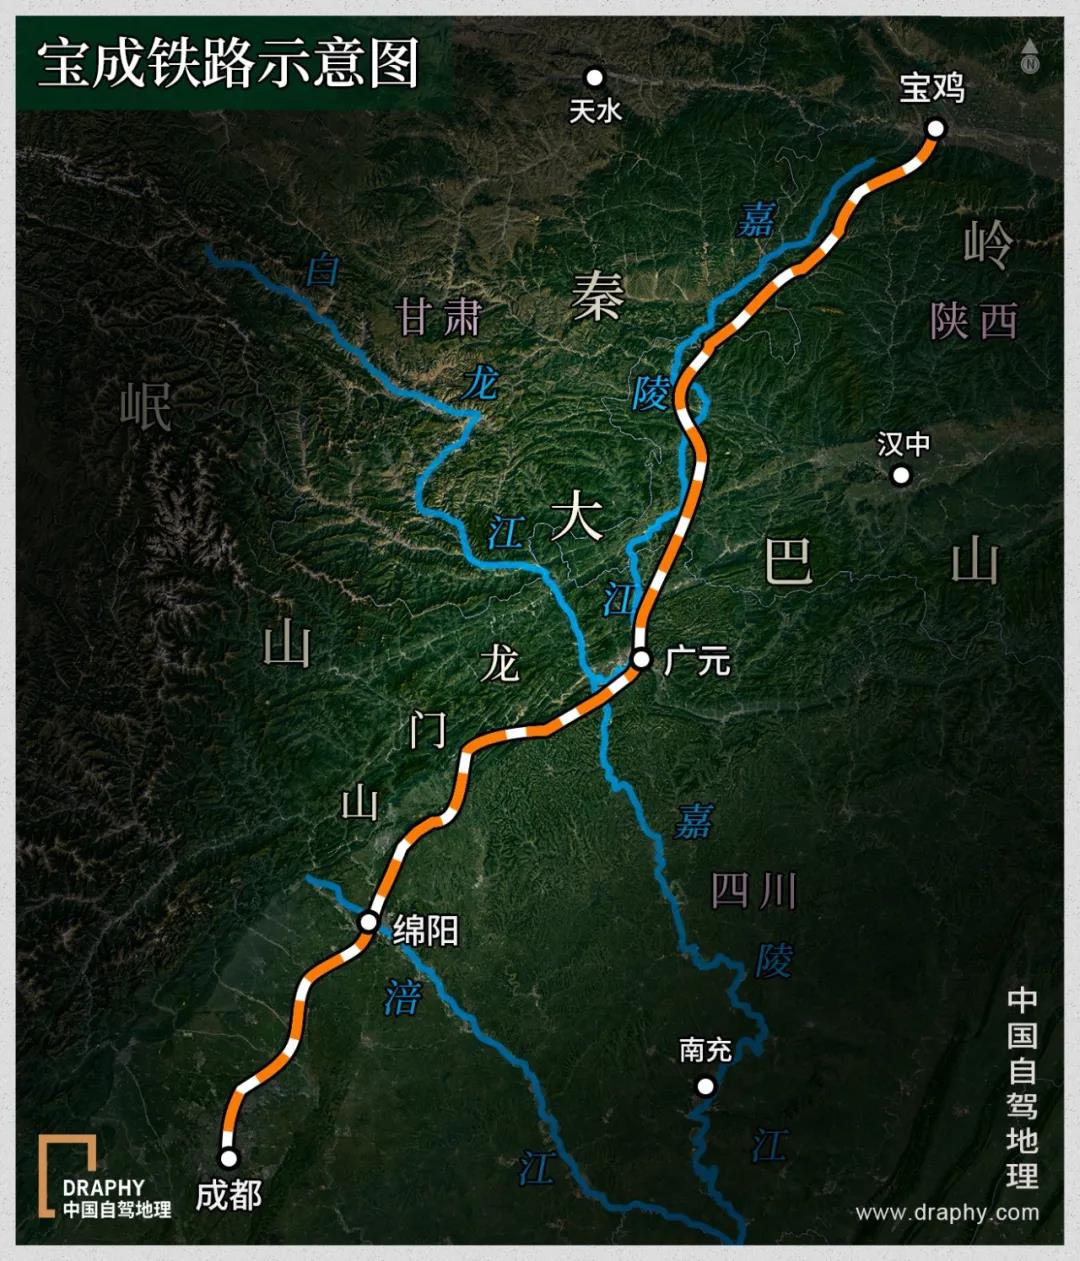 宝成铁路示意图 制图@《中国自驾地理》